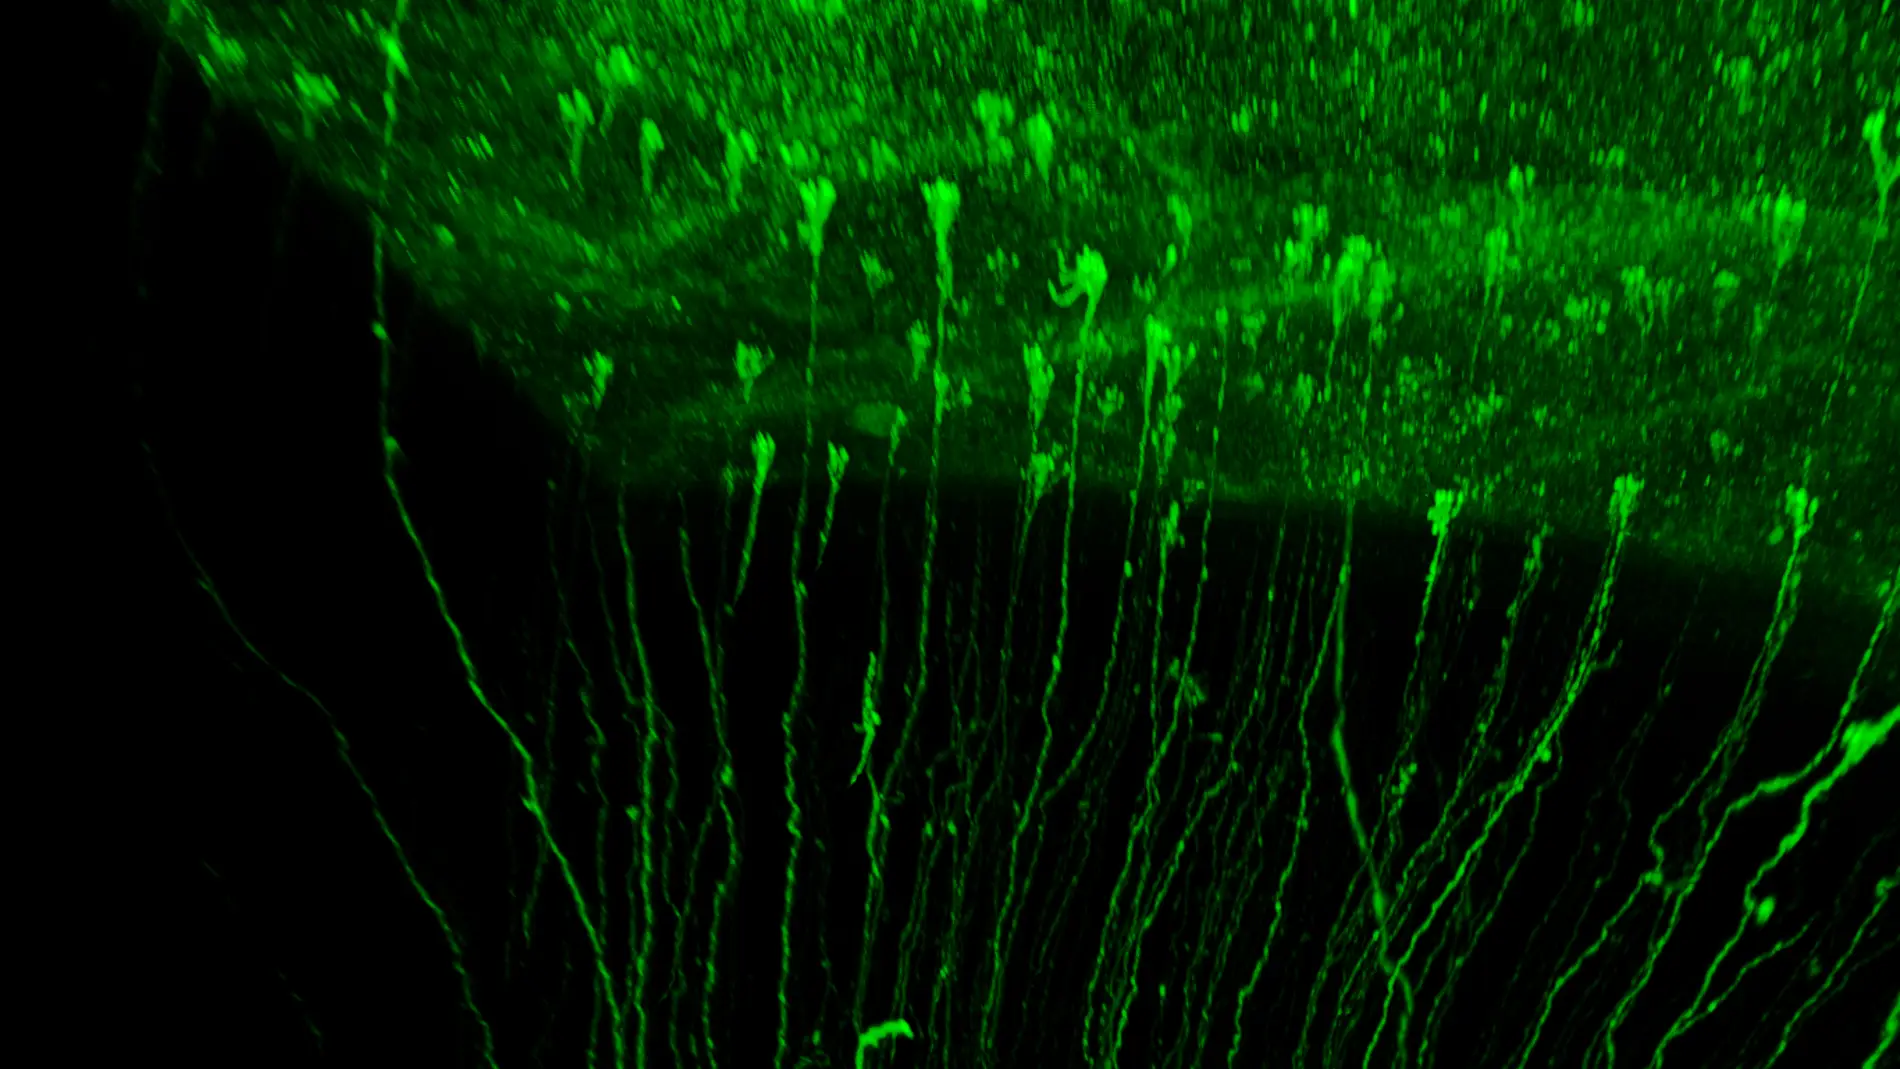 Diversidad de células Glia Radial en la corteza cerebral de hurón neonato, marcadas con proteína fluorescente verde y vistas dentro del cerebro transparentado.